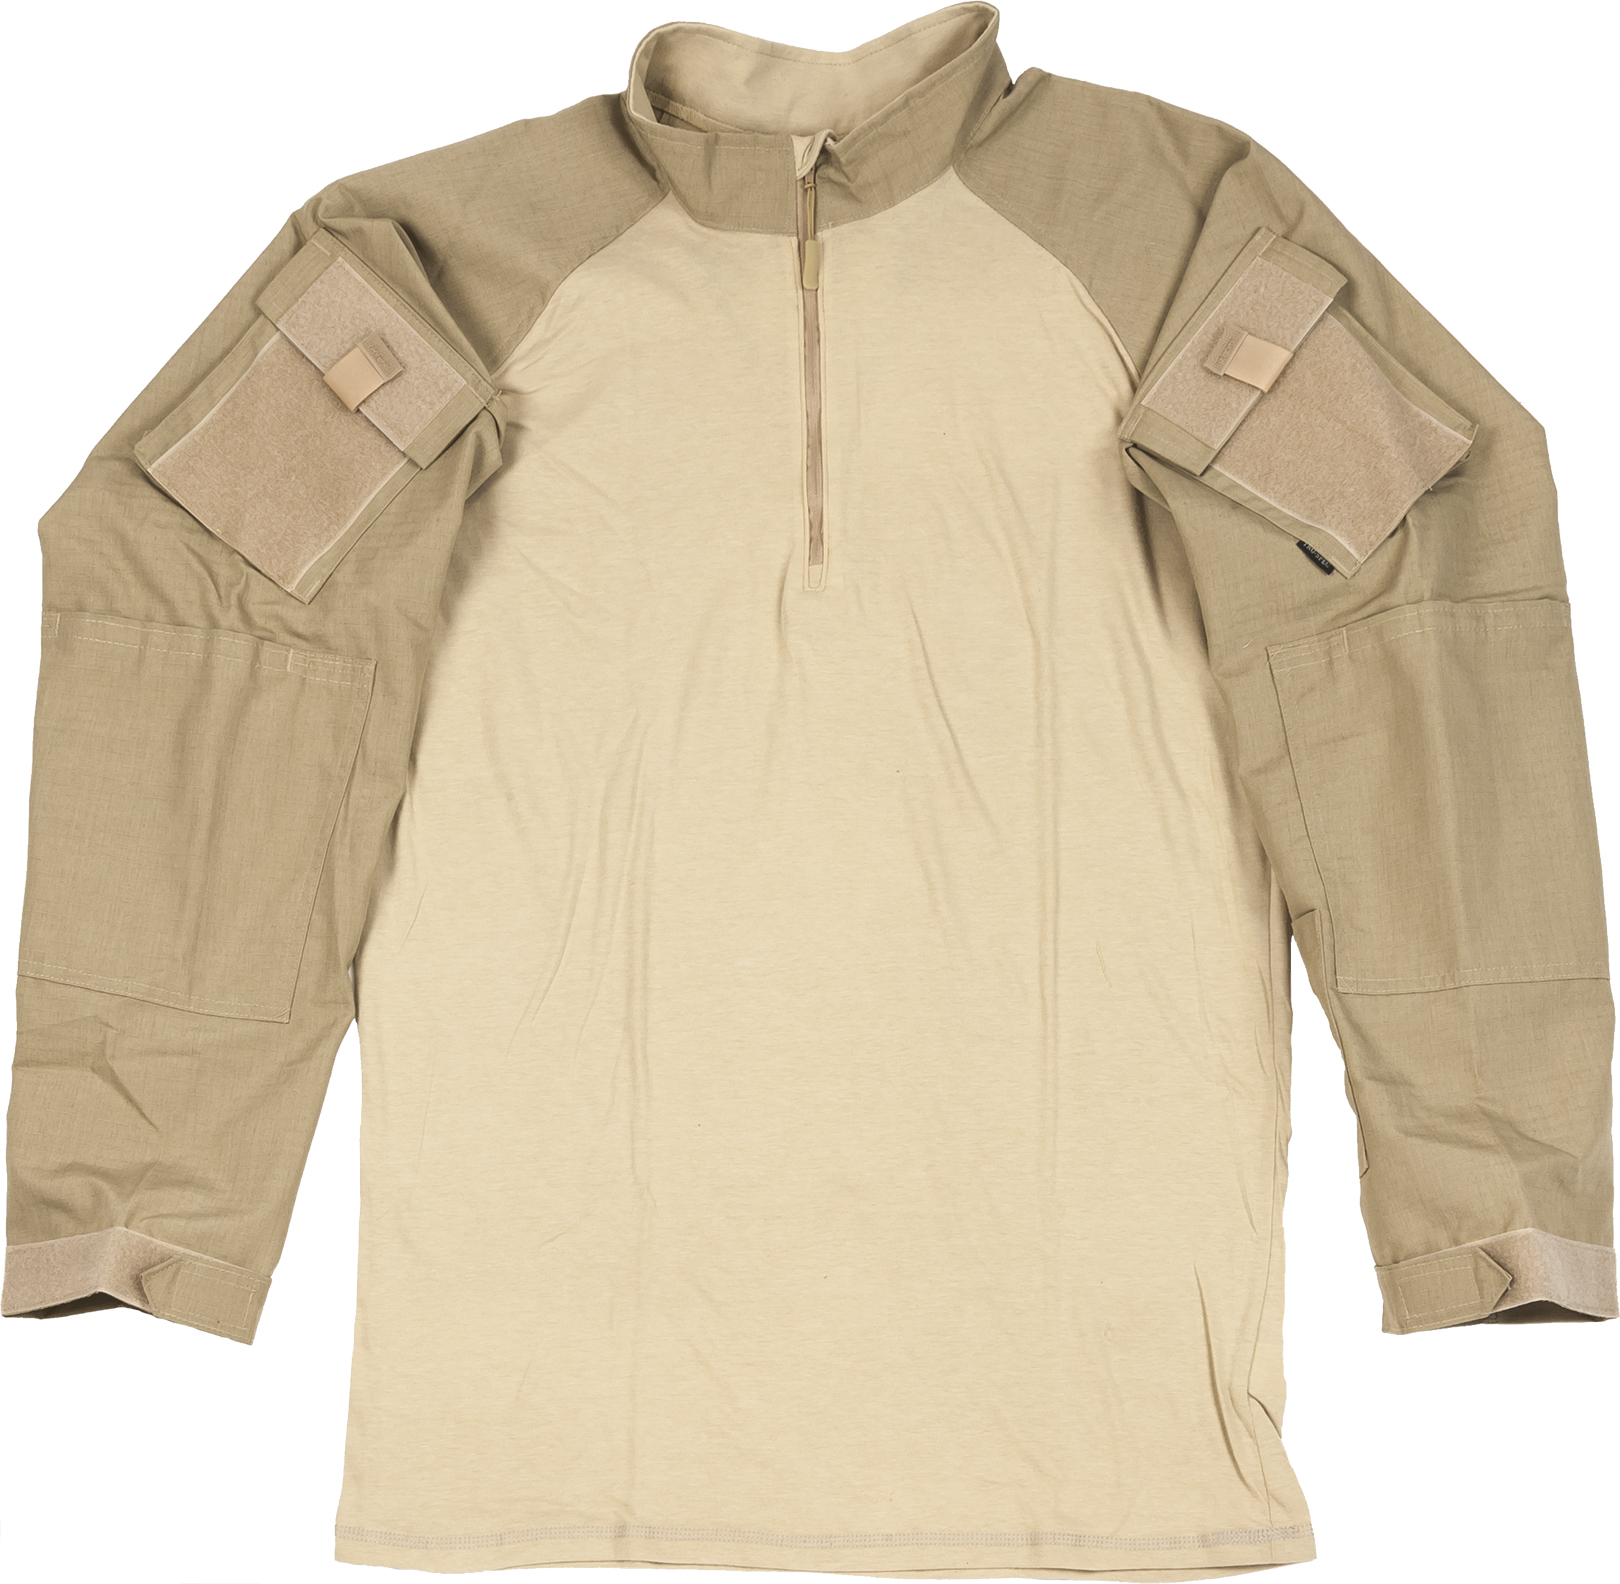 Truspec Tru Long Sleeve 1/4 Zip Combat Shirt Od Green Regular Large 2565005 